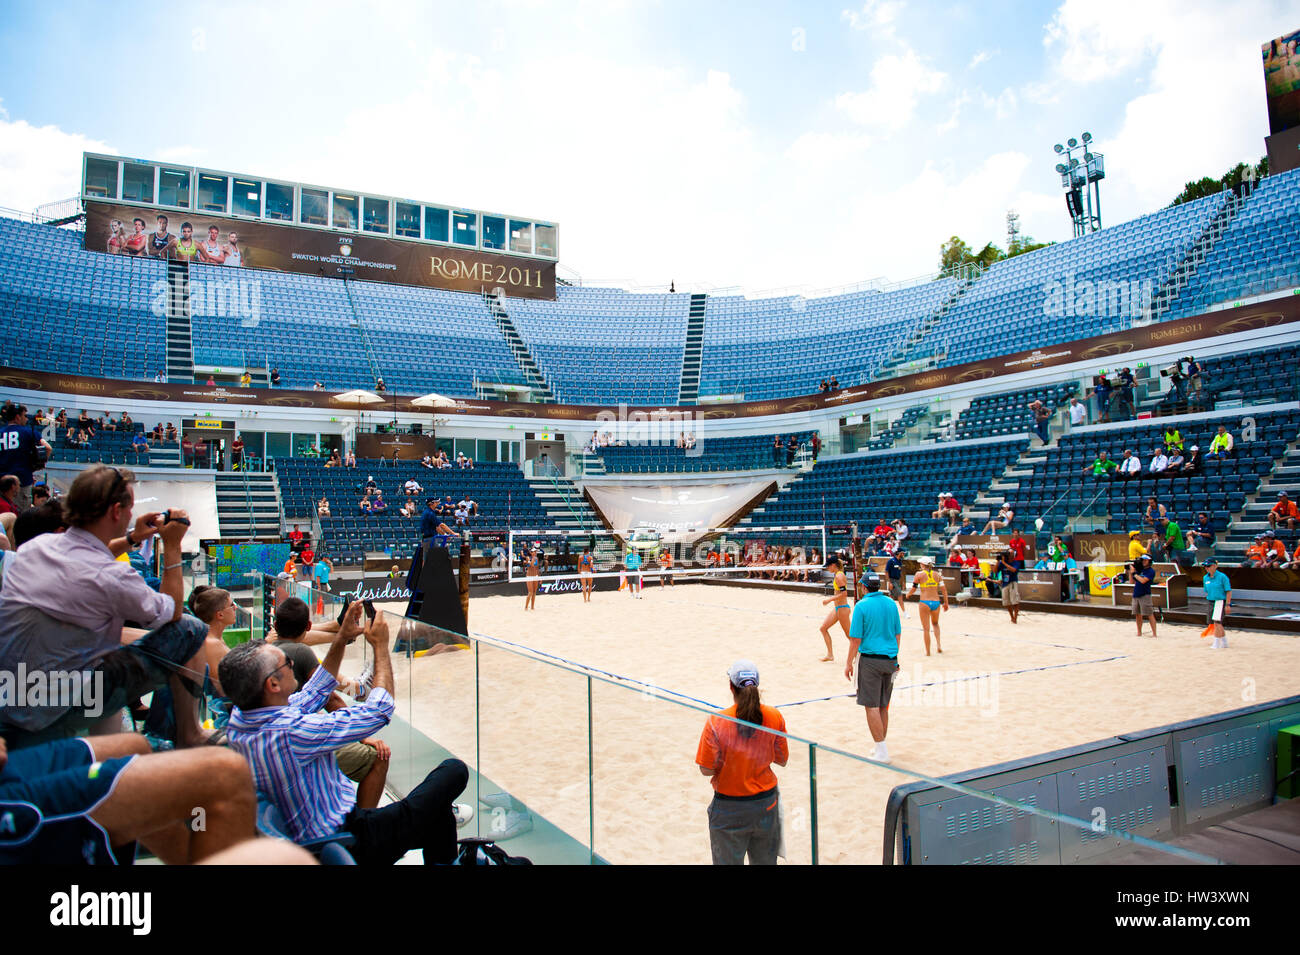 ROM, ITALIEN - 14. JUNI 2011. Beach-Volleyball-Weltmeisterschaften. Panorama des Stadions während eines Spiels Stockfoto